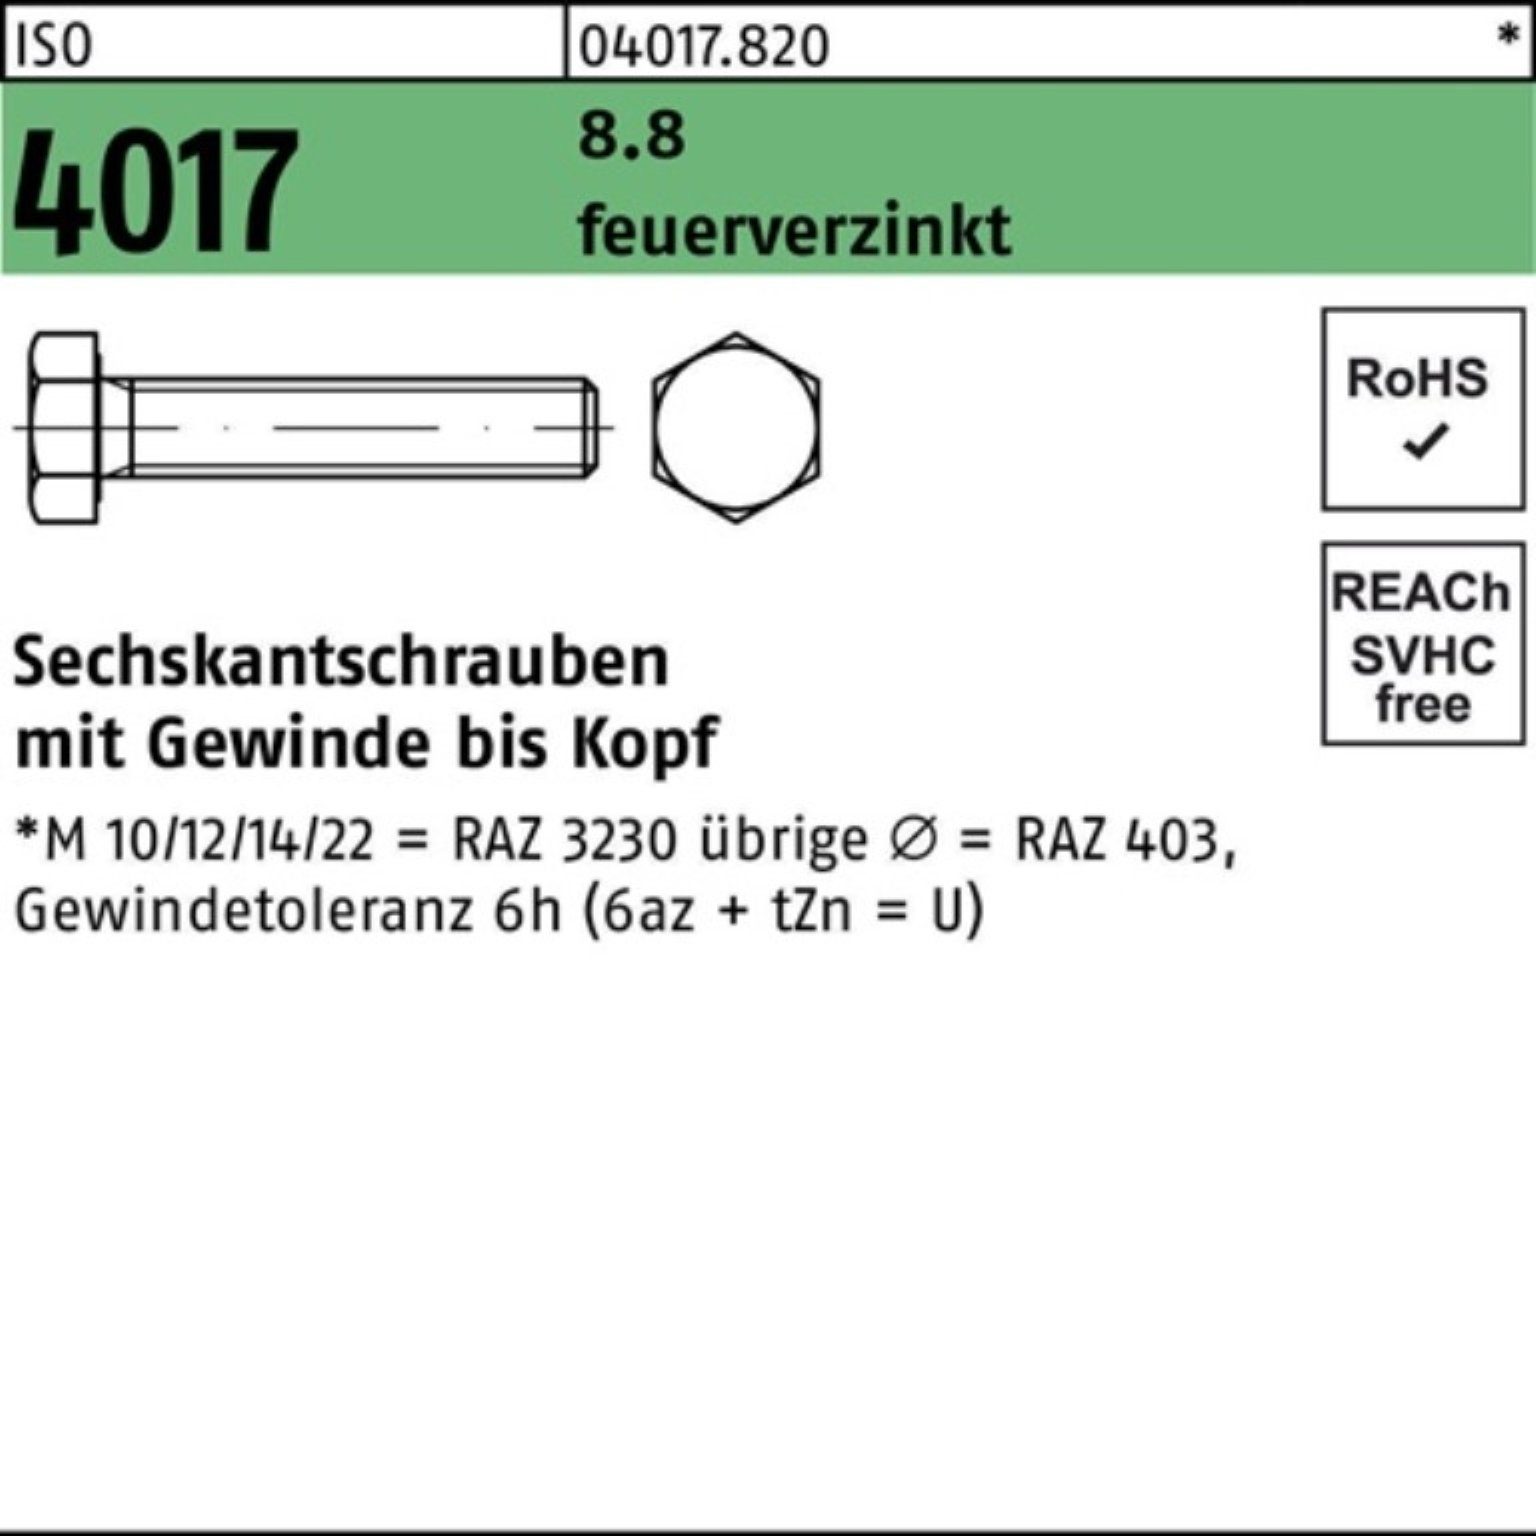 Bufab Sechskantschraube 100er Pack Sechskantschraube ISO 4017 VG M10x 50 8.8 feuerverz. 100 St